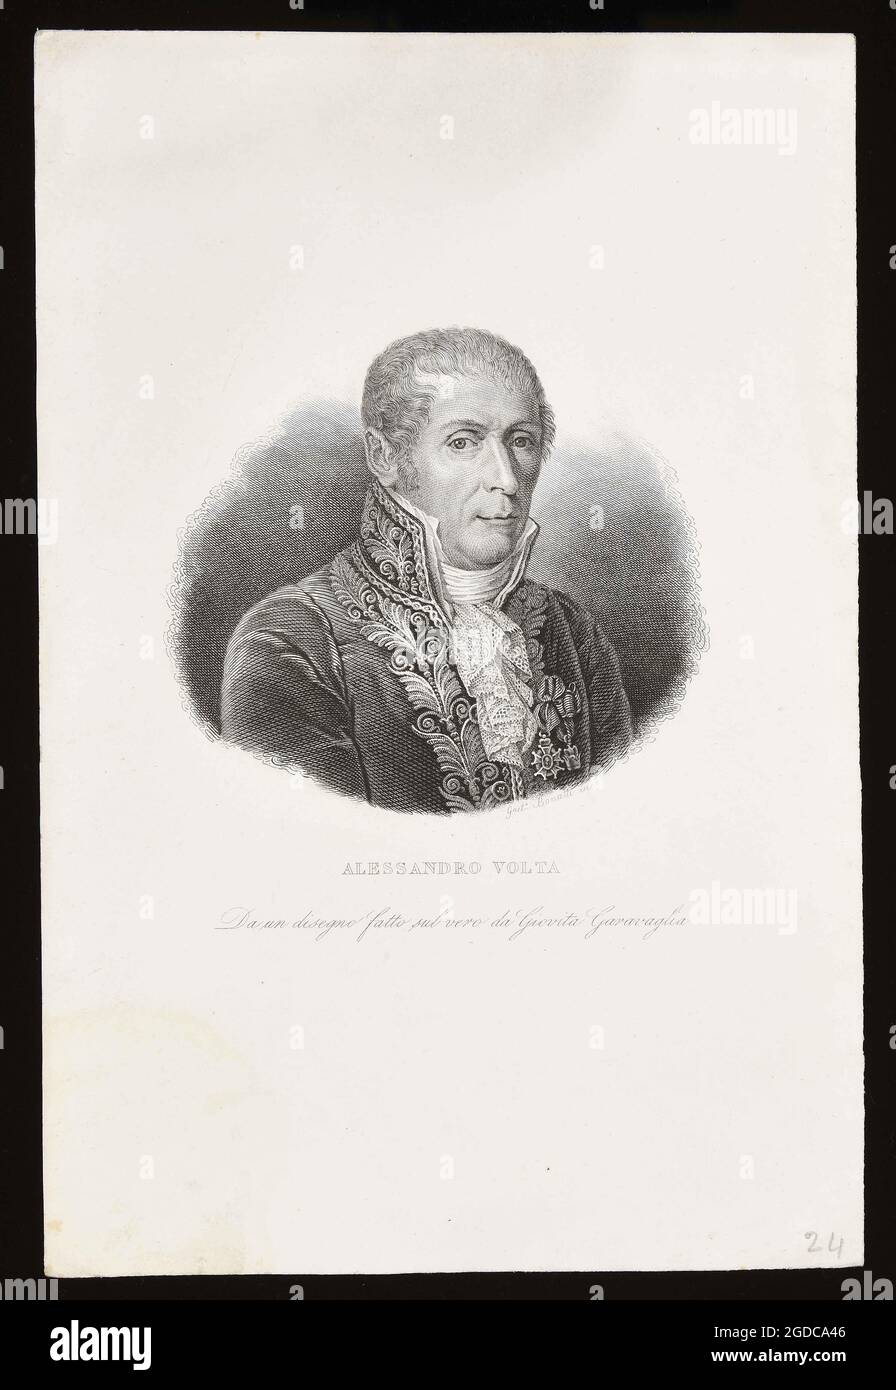 Title: Alessandro Volta. Creator: Gaetano Bonatti Date: 1837 Medium: Copper engraving Dimension: 268x178 mm Location: Municipal Library of Trento Stock Photo